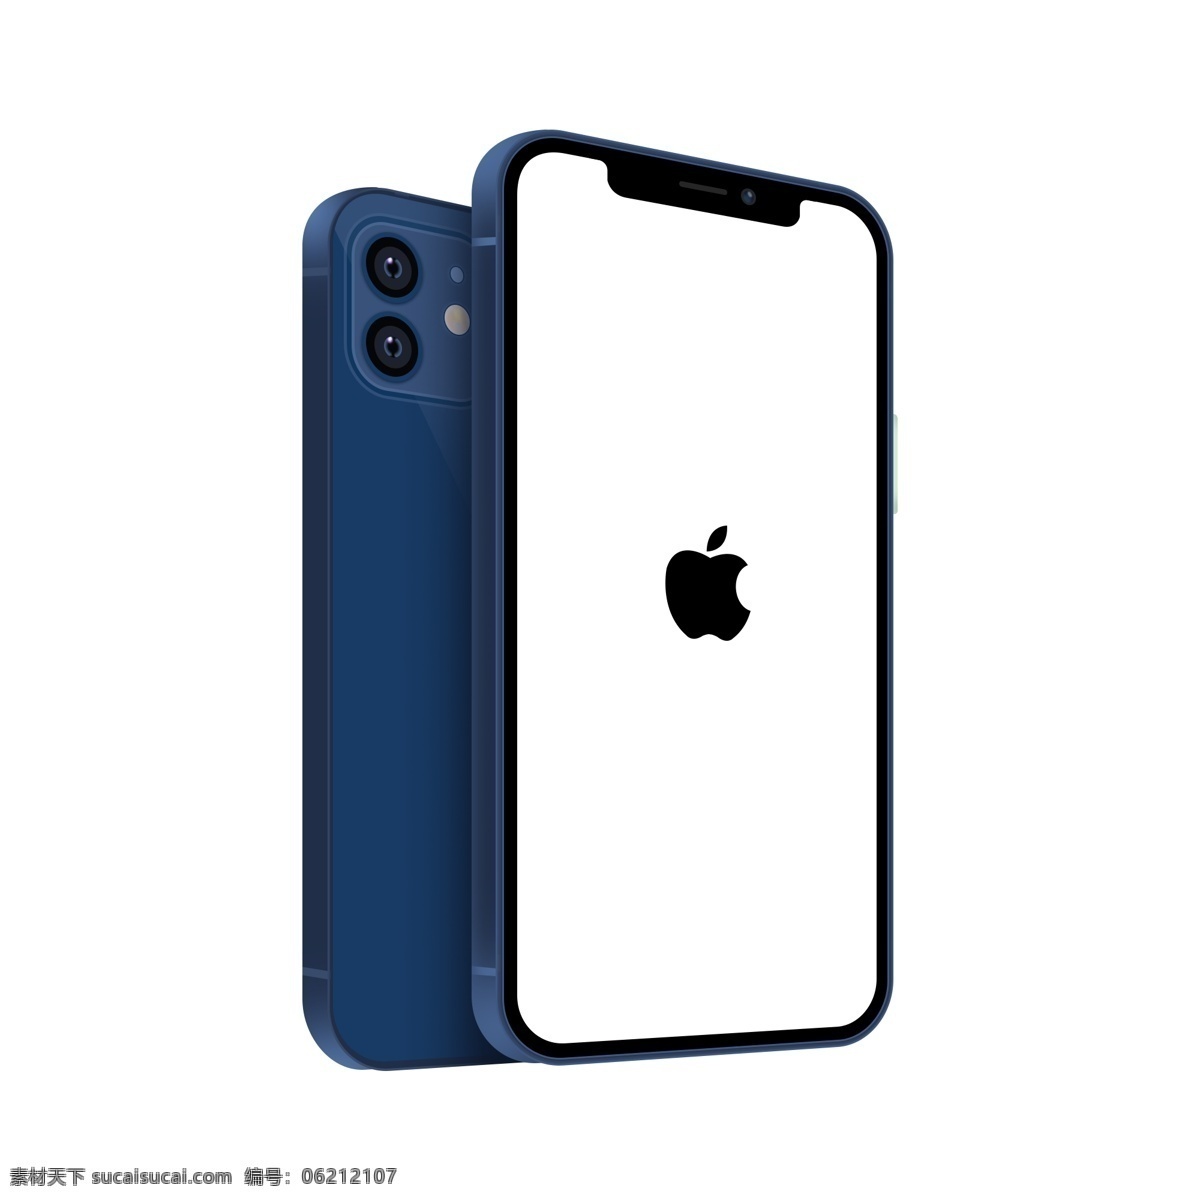 iphone 蓝色 苹果 手机图片 手机 无边款 新款 2020 多摄像头 两个摄像头 苹果logo ps素材 分层